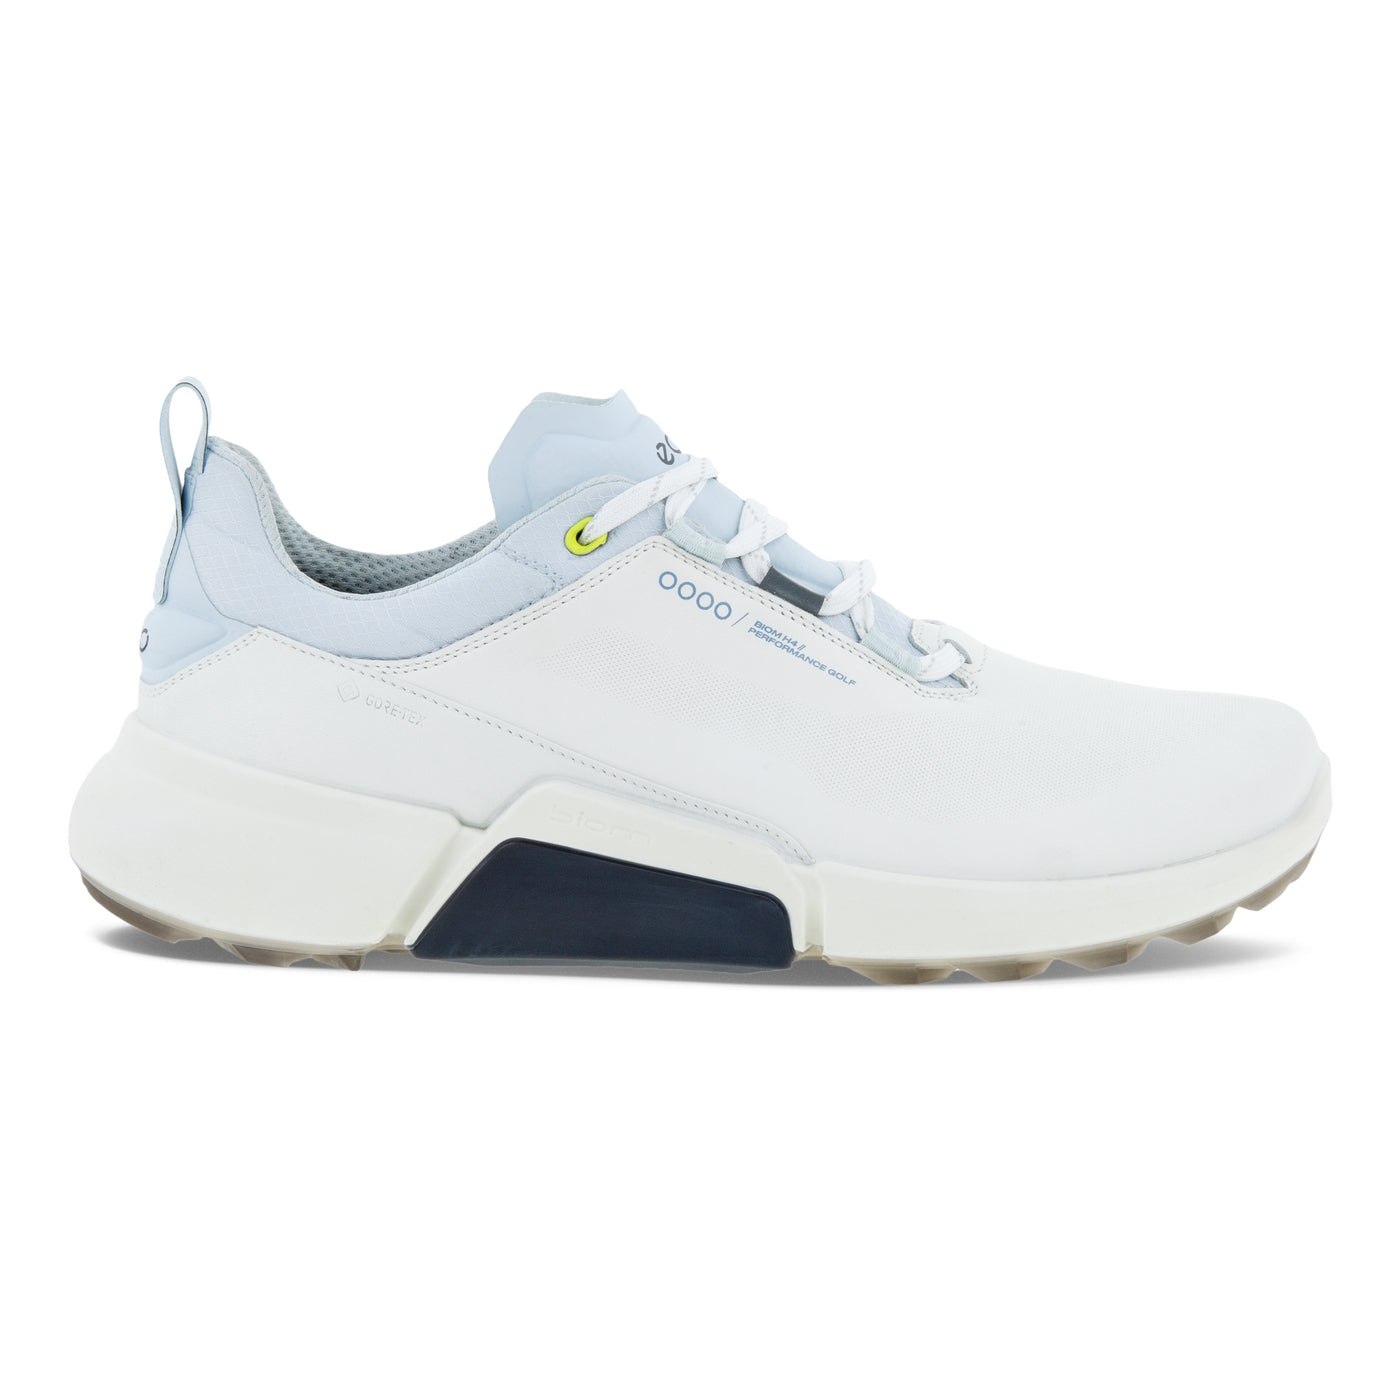 Ecco Men's Biom H4 Golf Shoes - White/Air